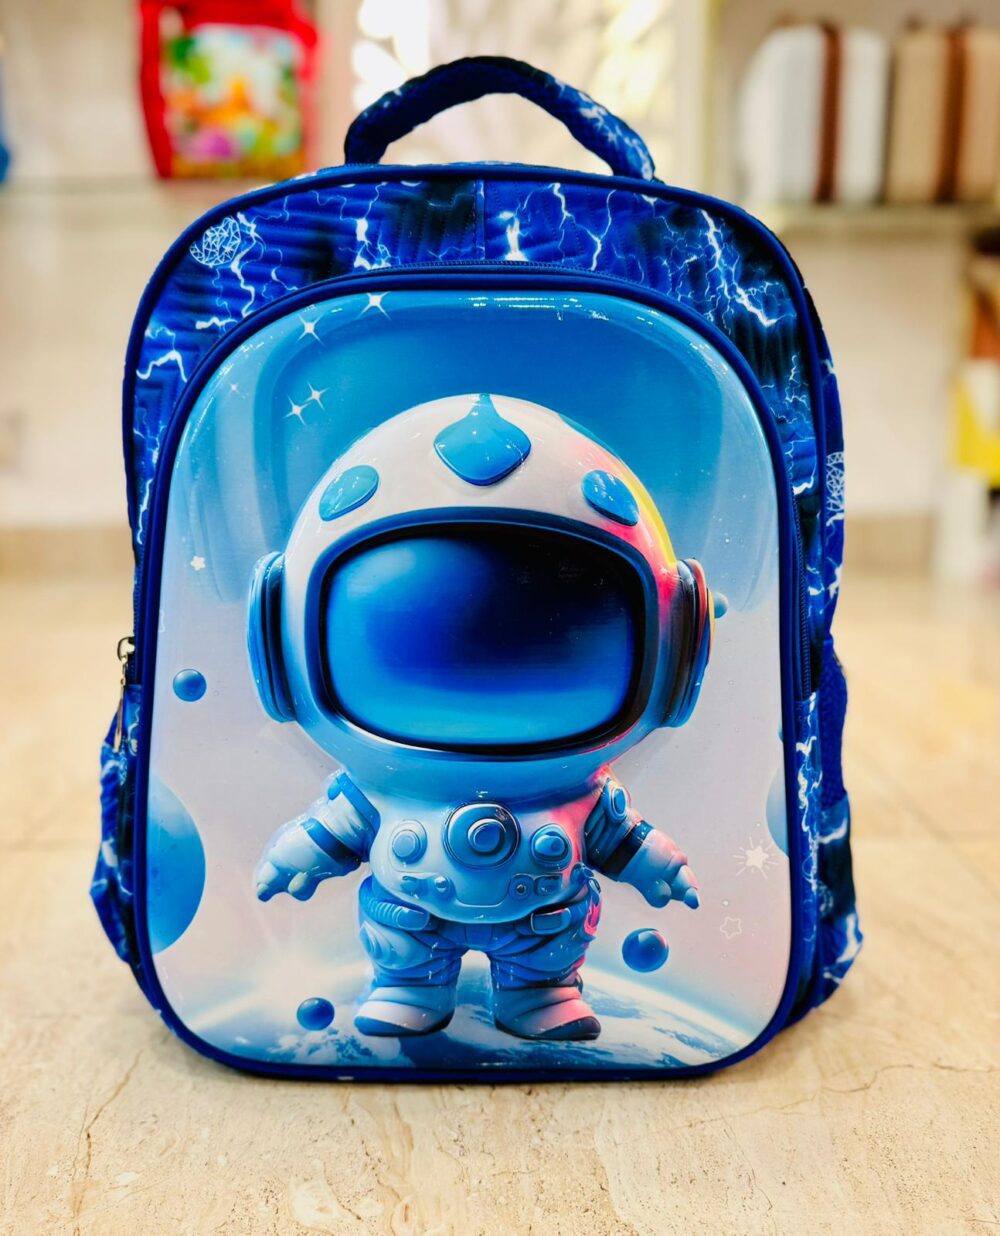 Premium Space School Bag